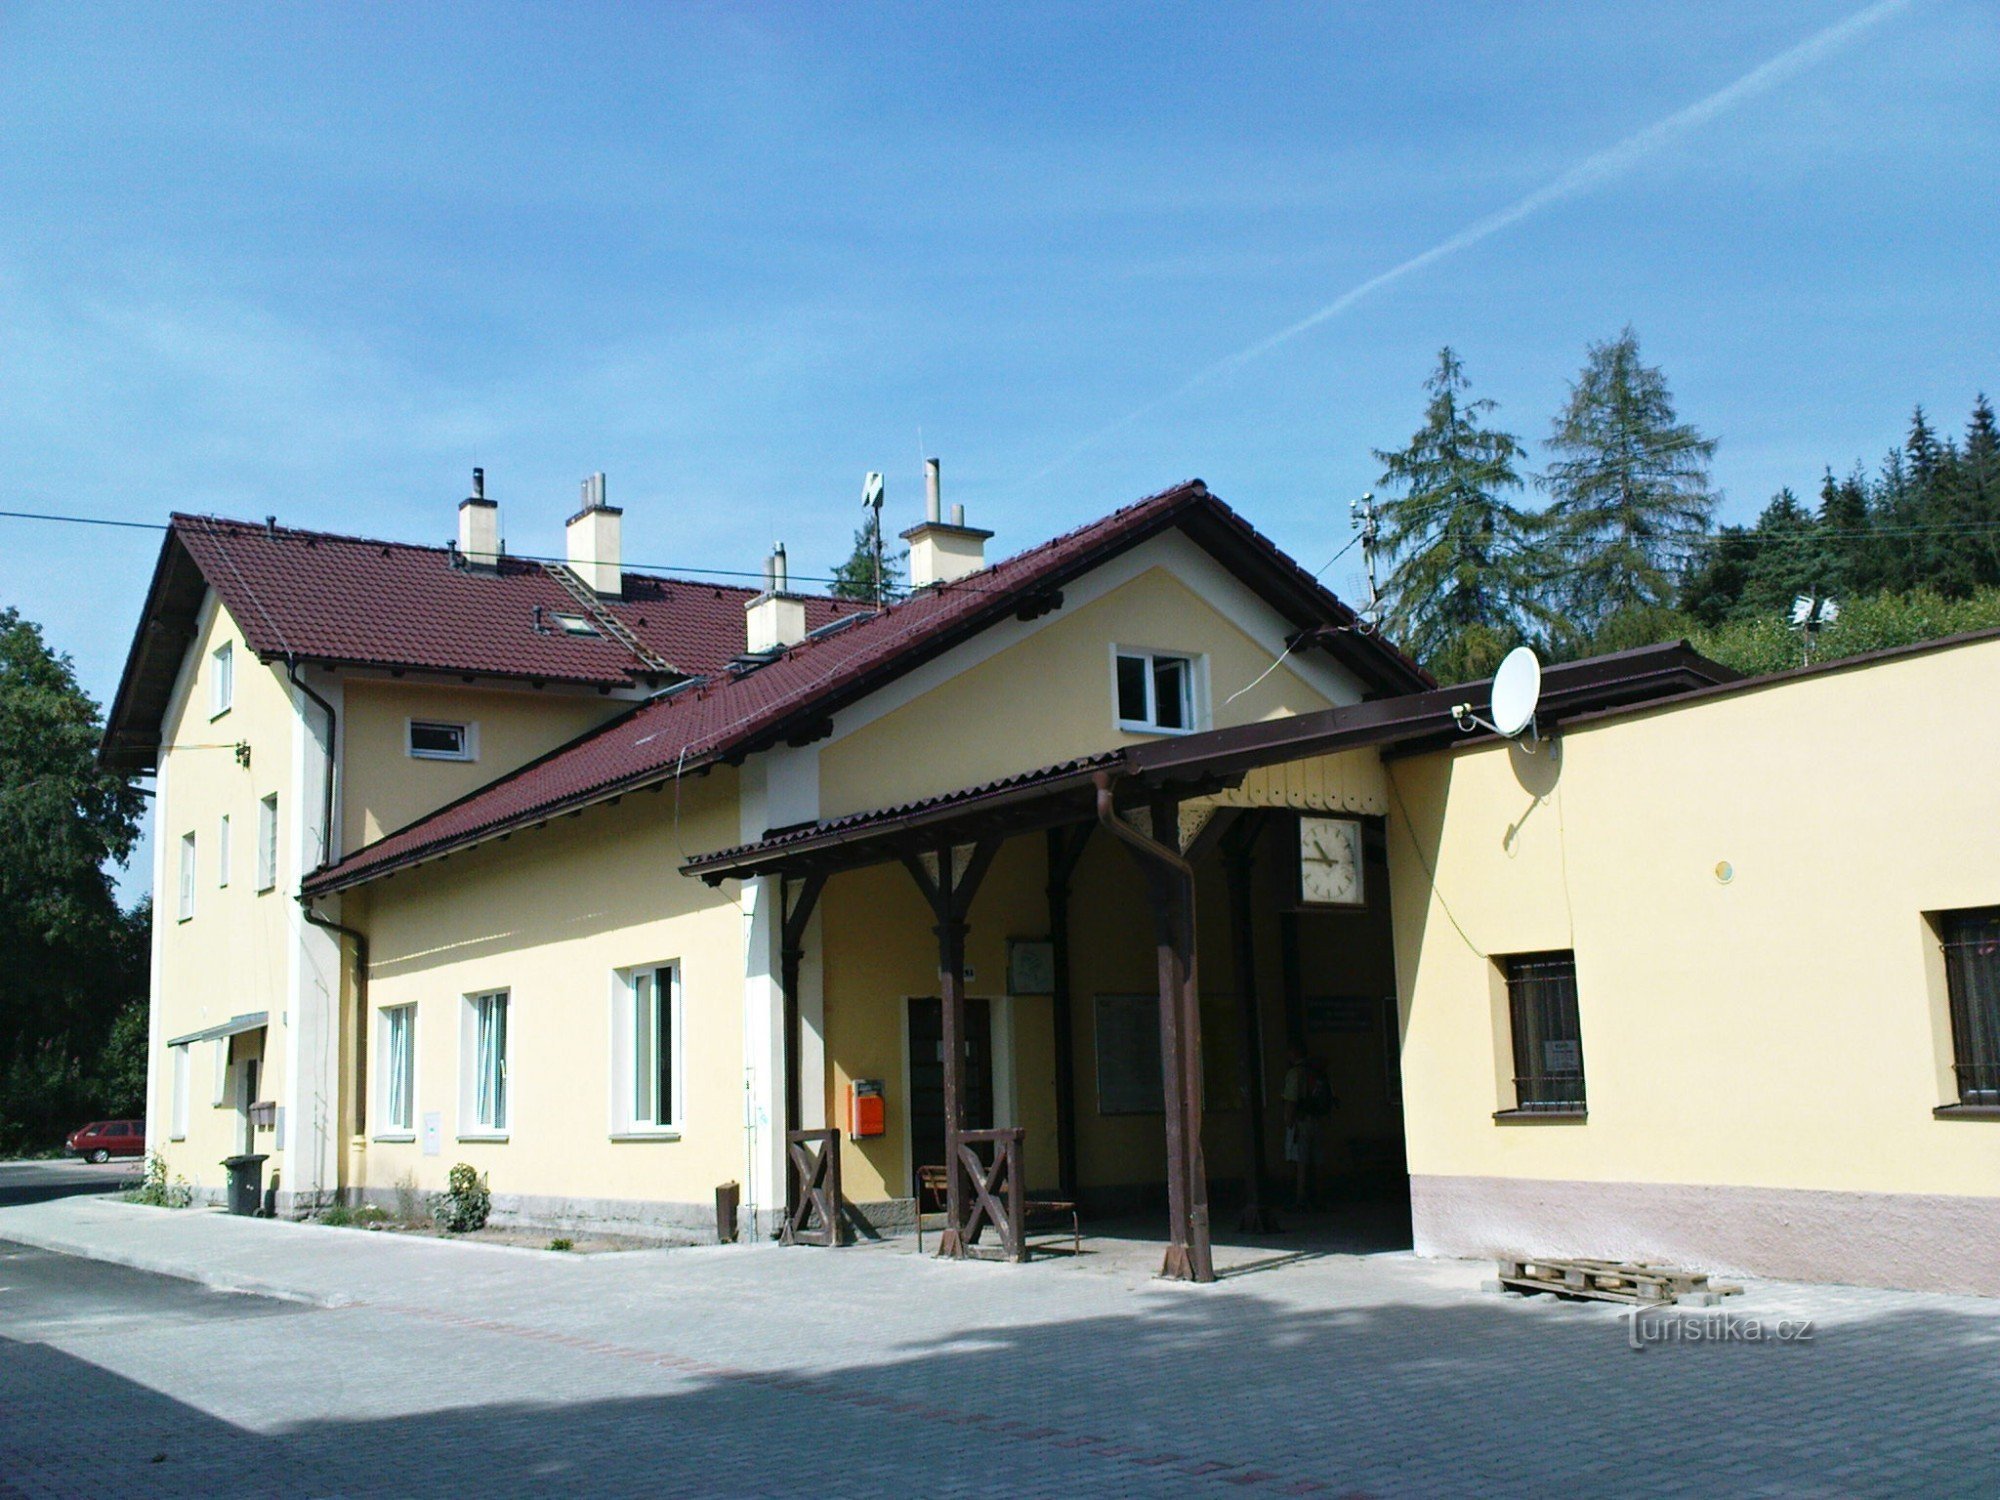 Smržovka - Station